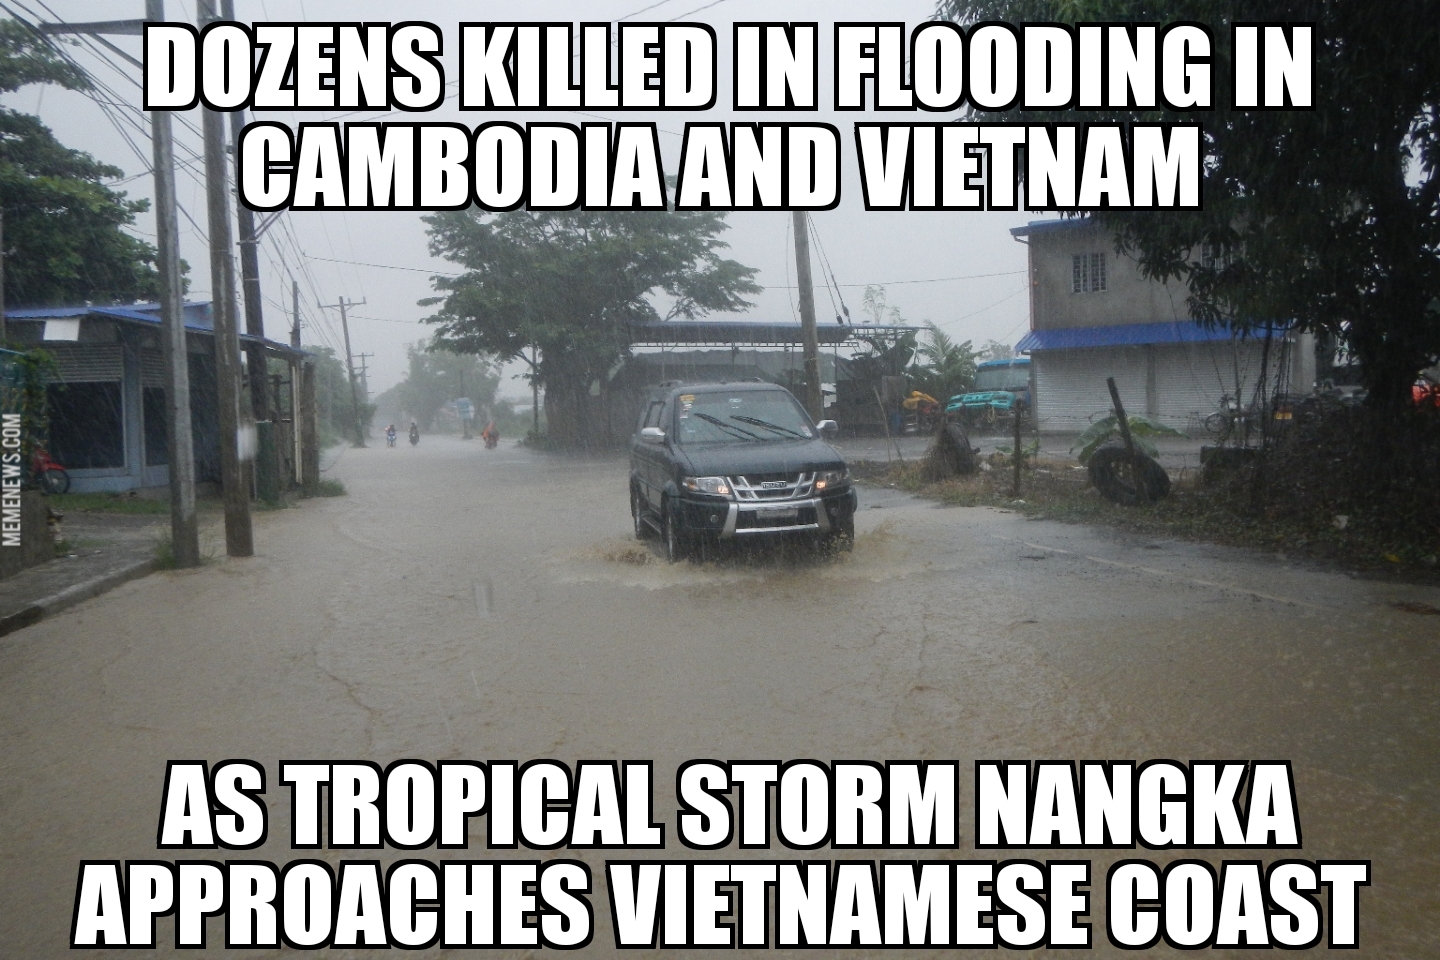 Tropical Storm Nangka floods Cambodia and Vietnam